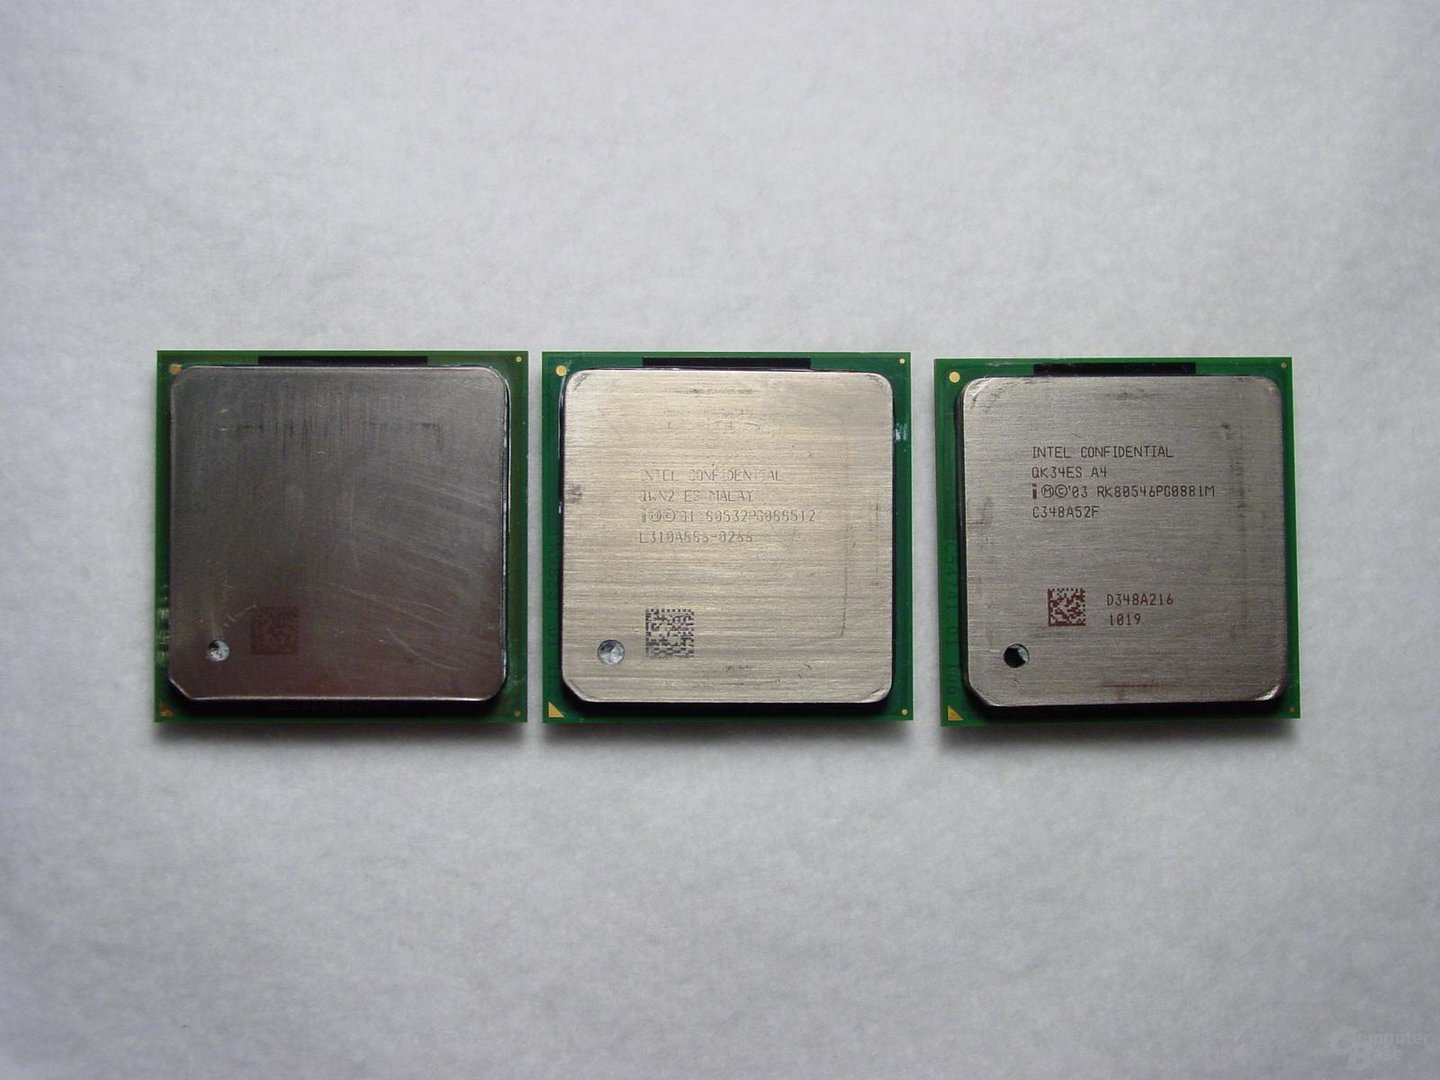 v.l.n.r: Pentium 4 Extreme Edition, Pentium 4 Northwood, Pentium 4 Prescott